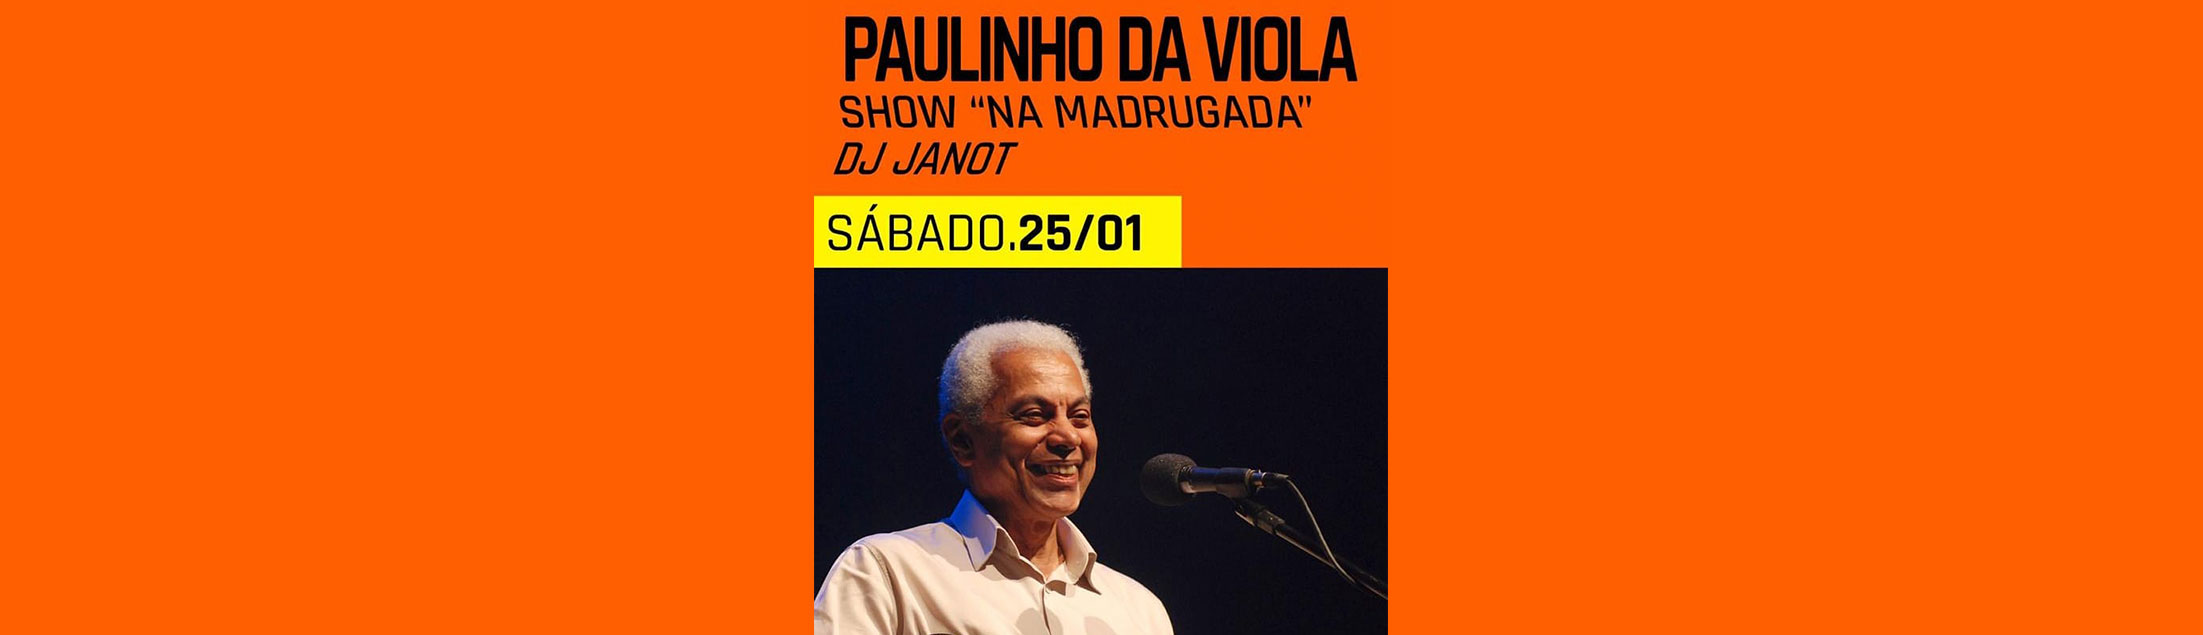 Paulinho da Viola apresenta show ‘Na Madrugada’ no Circo Voador